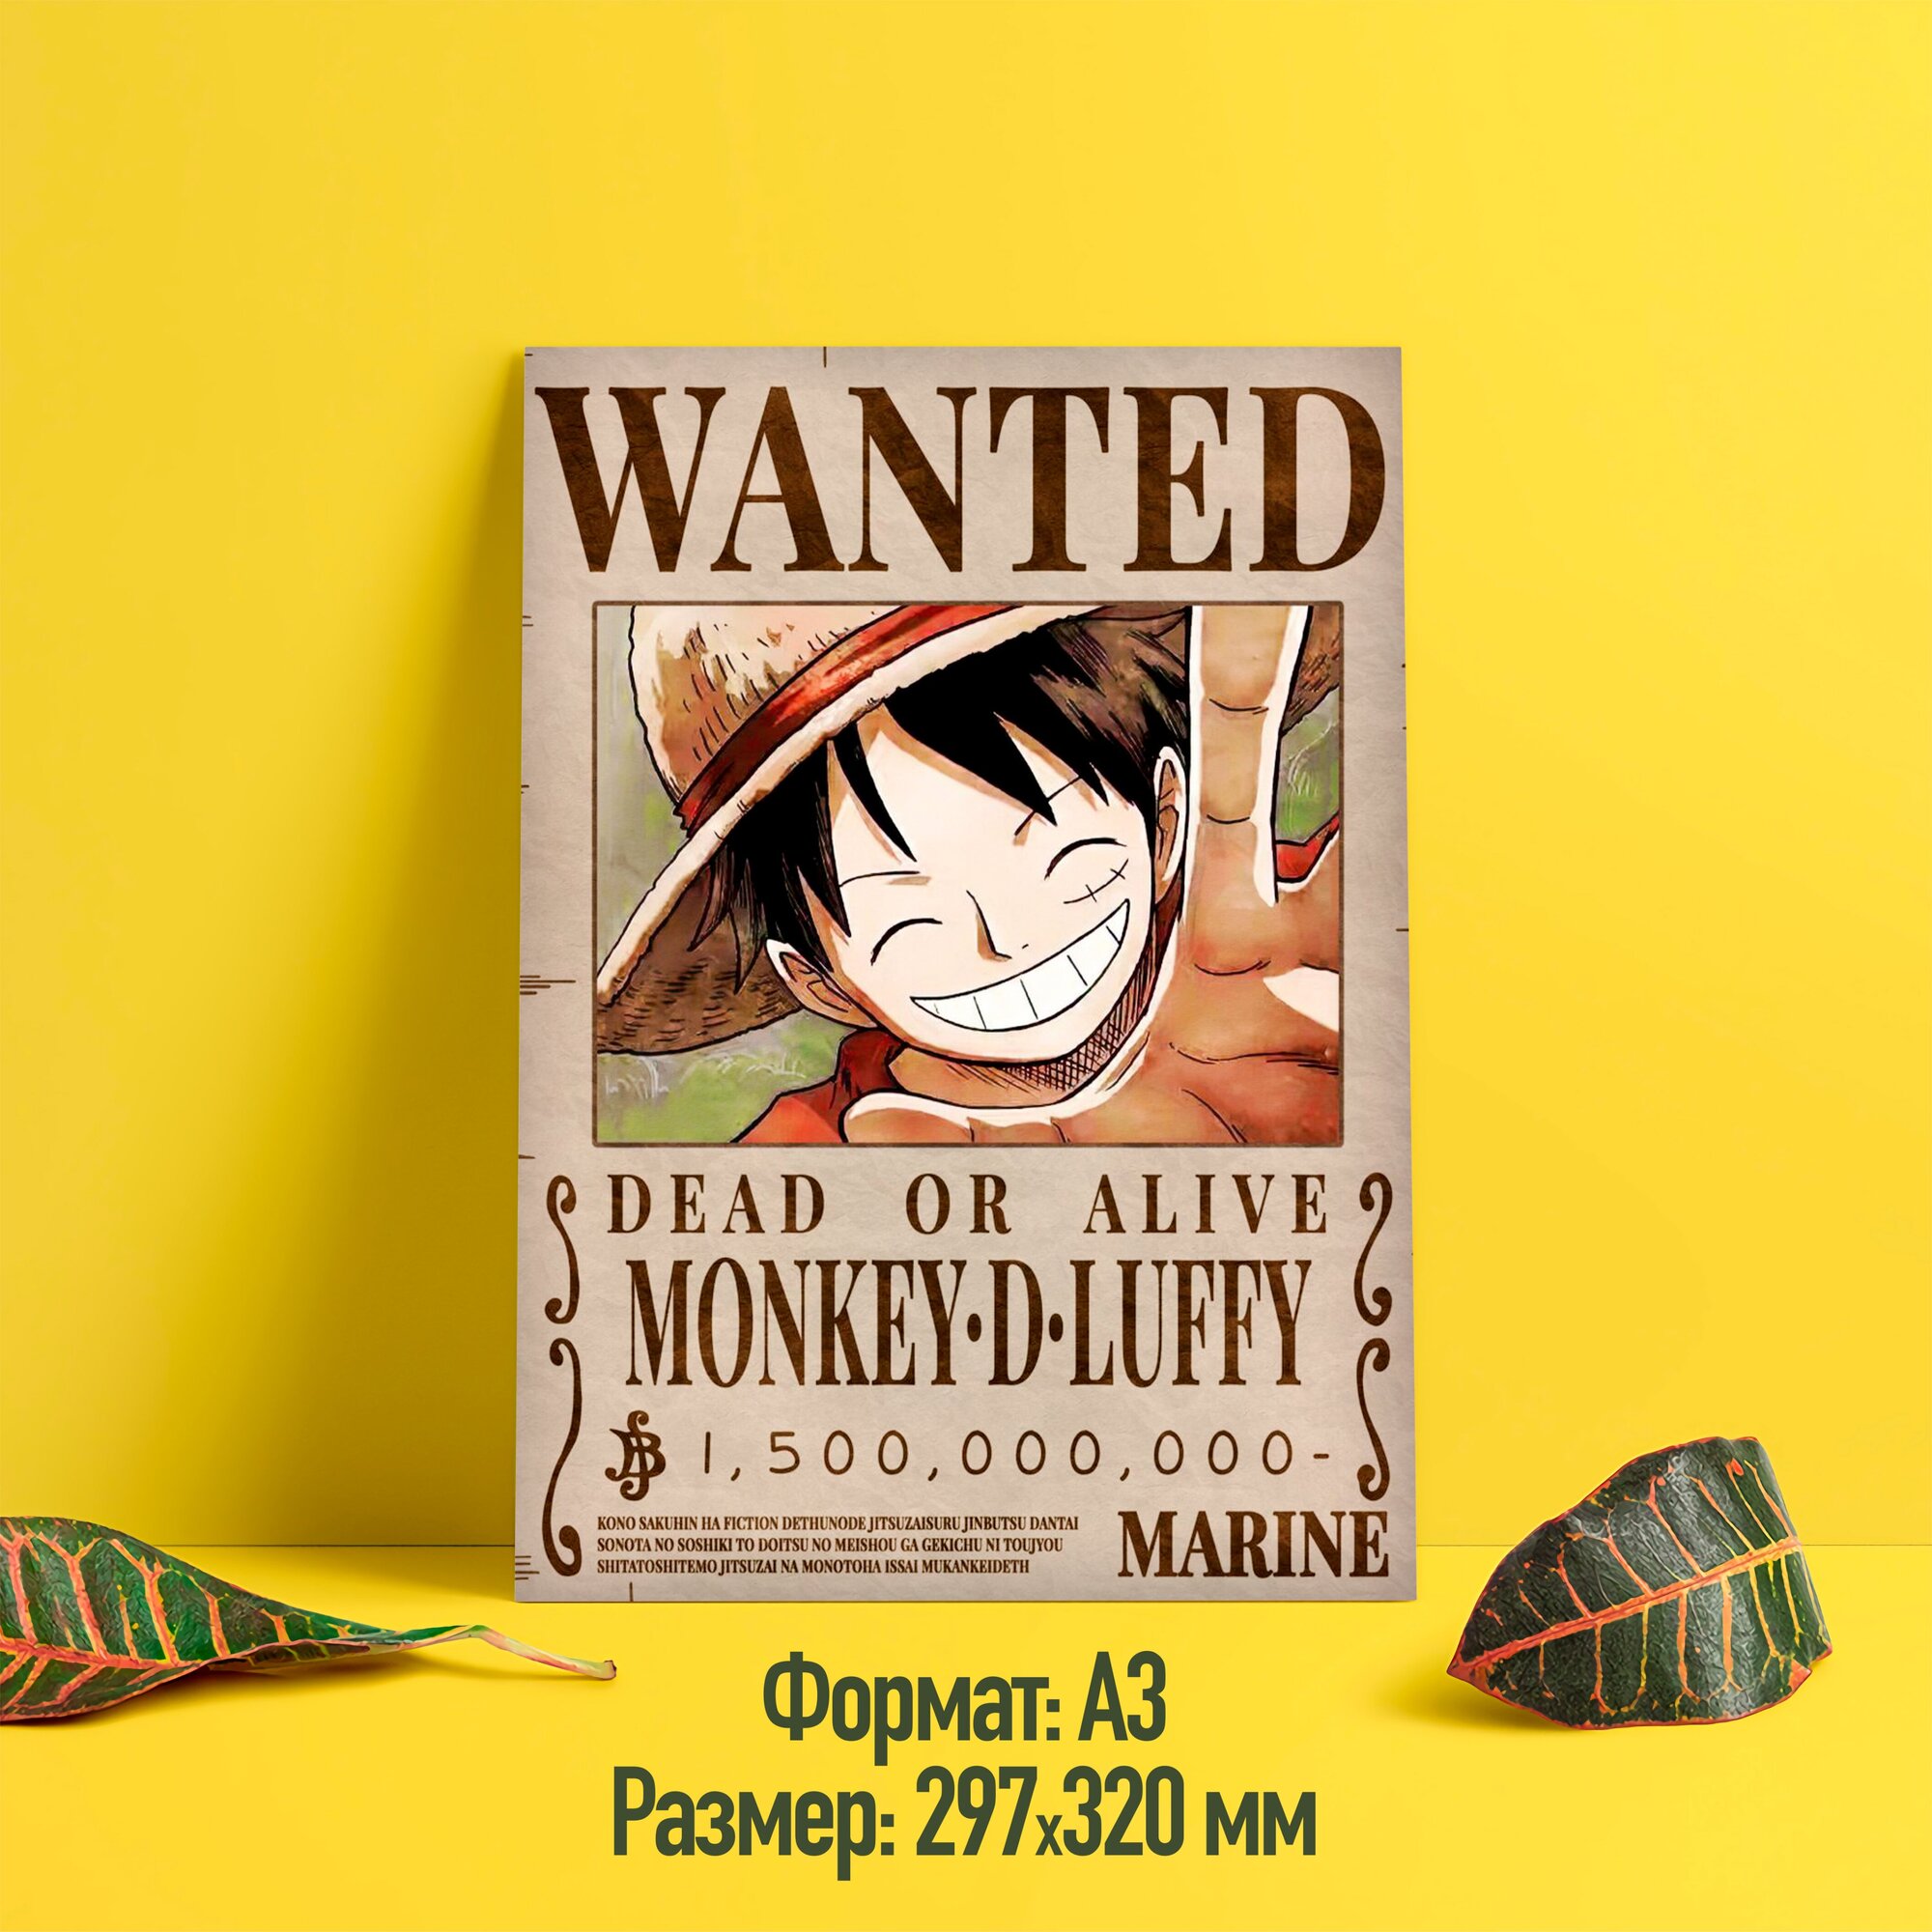 Постер/плакат аниме "Ван Пис/One Piece" (Монки Д. Луффи, 20)